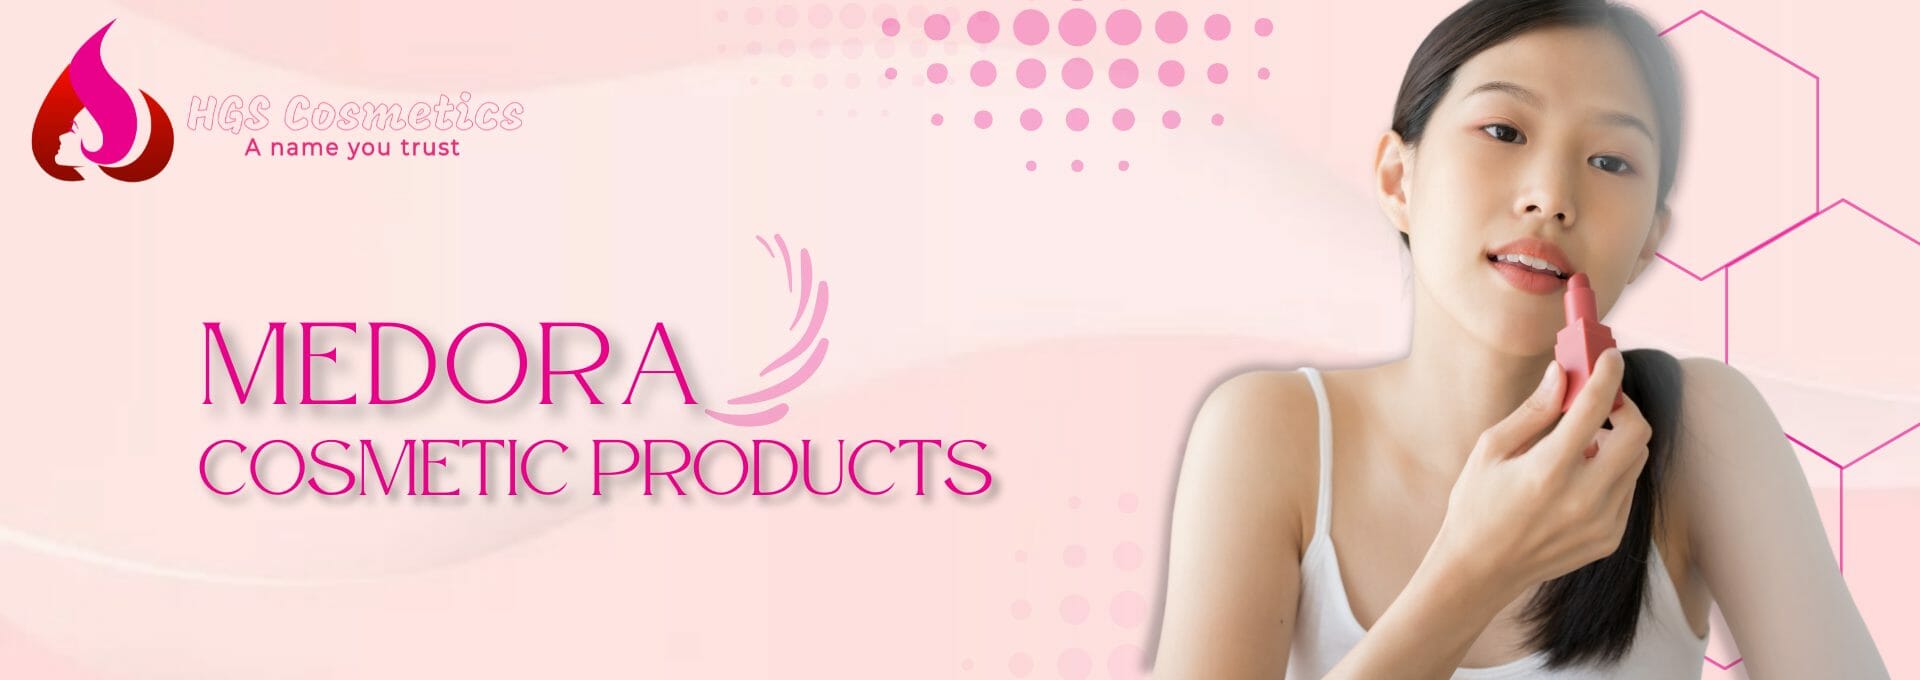 Buy Original Medora Products Online in Pakistan @ HGS Cosmetics